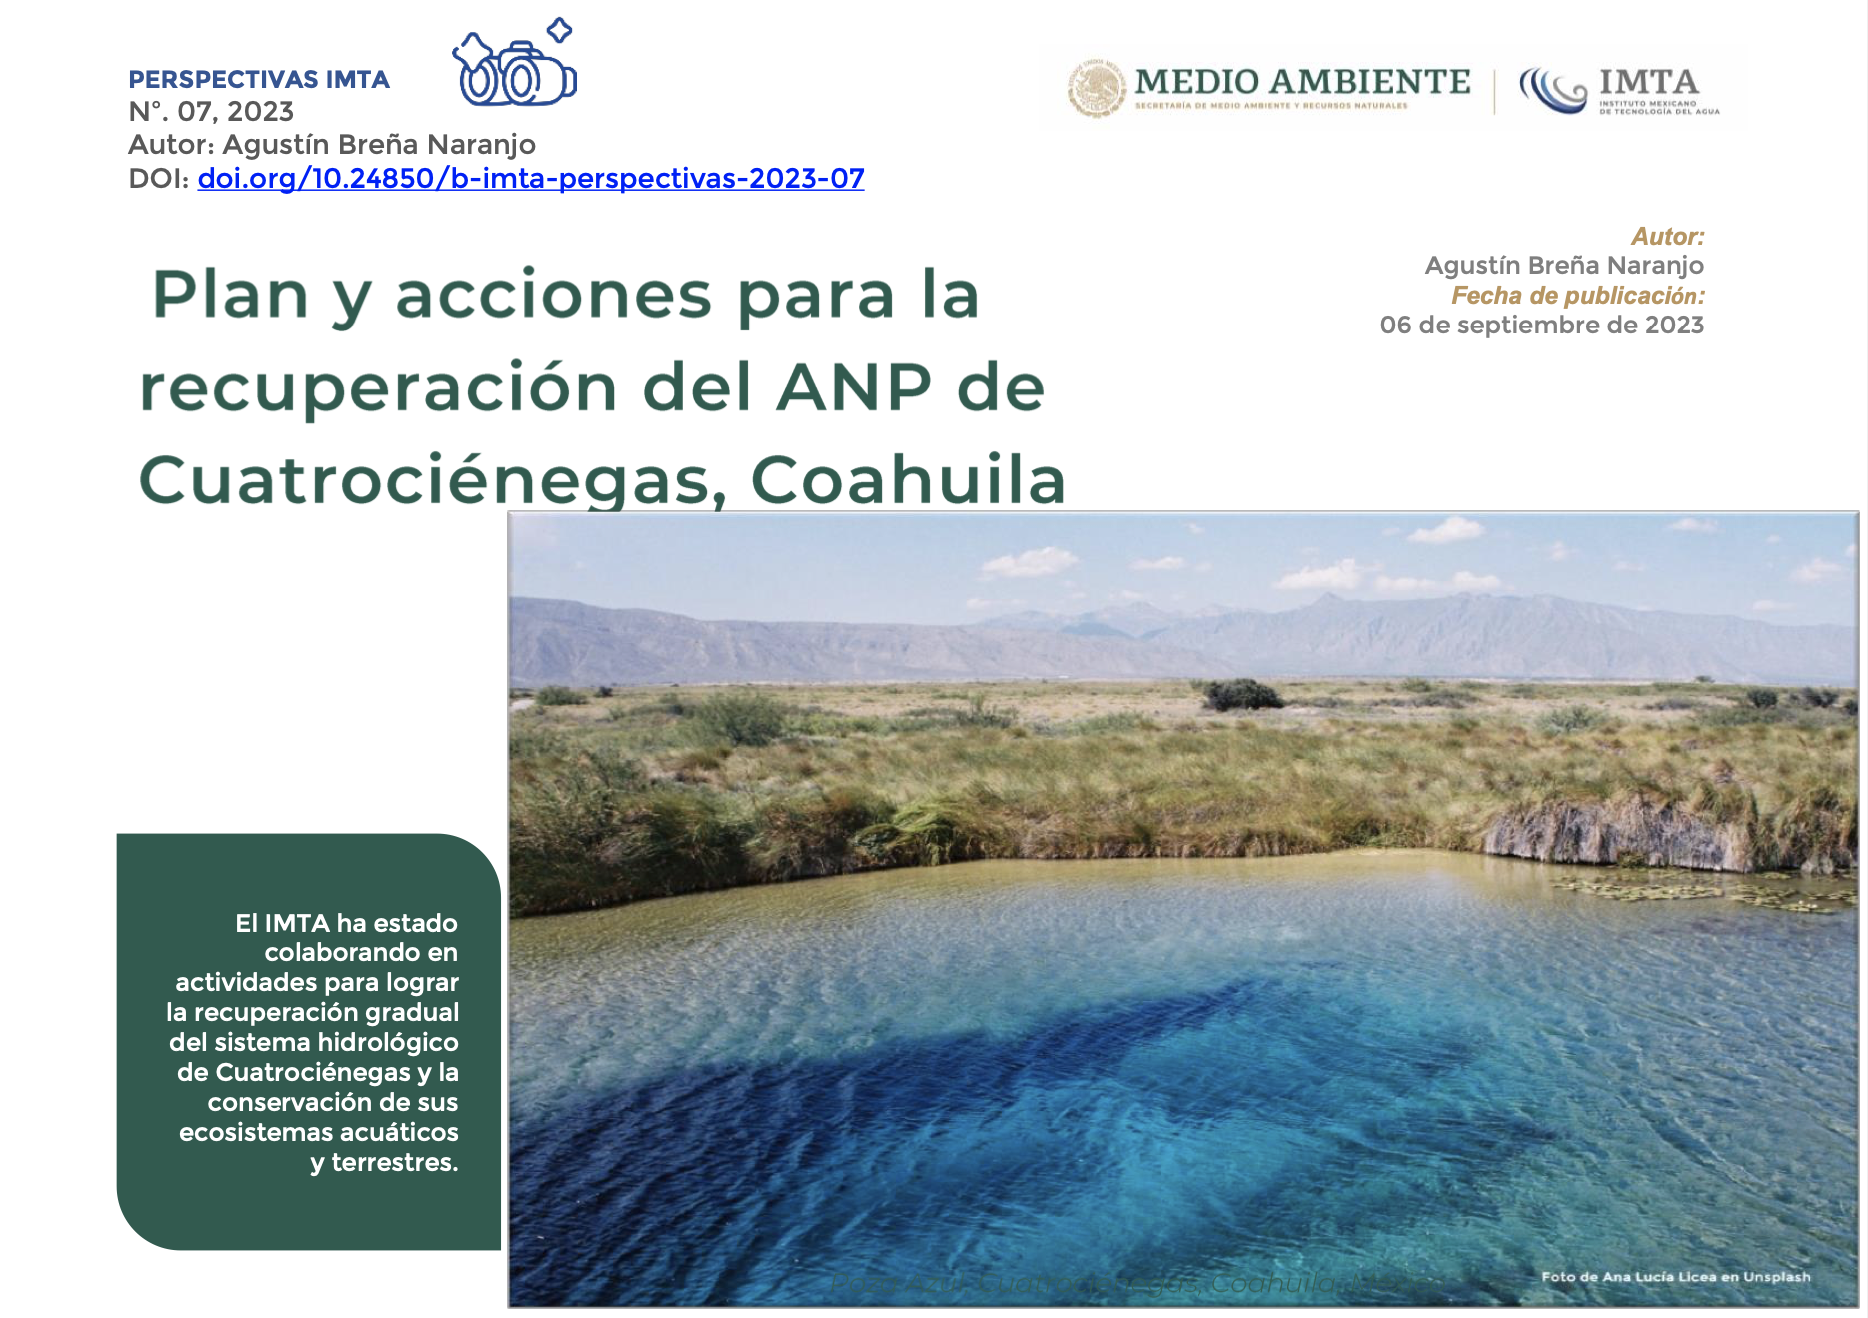 Plan y acciones para la recuperación del ANP de Cuatrociénegas, Coahuila (IMTA)